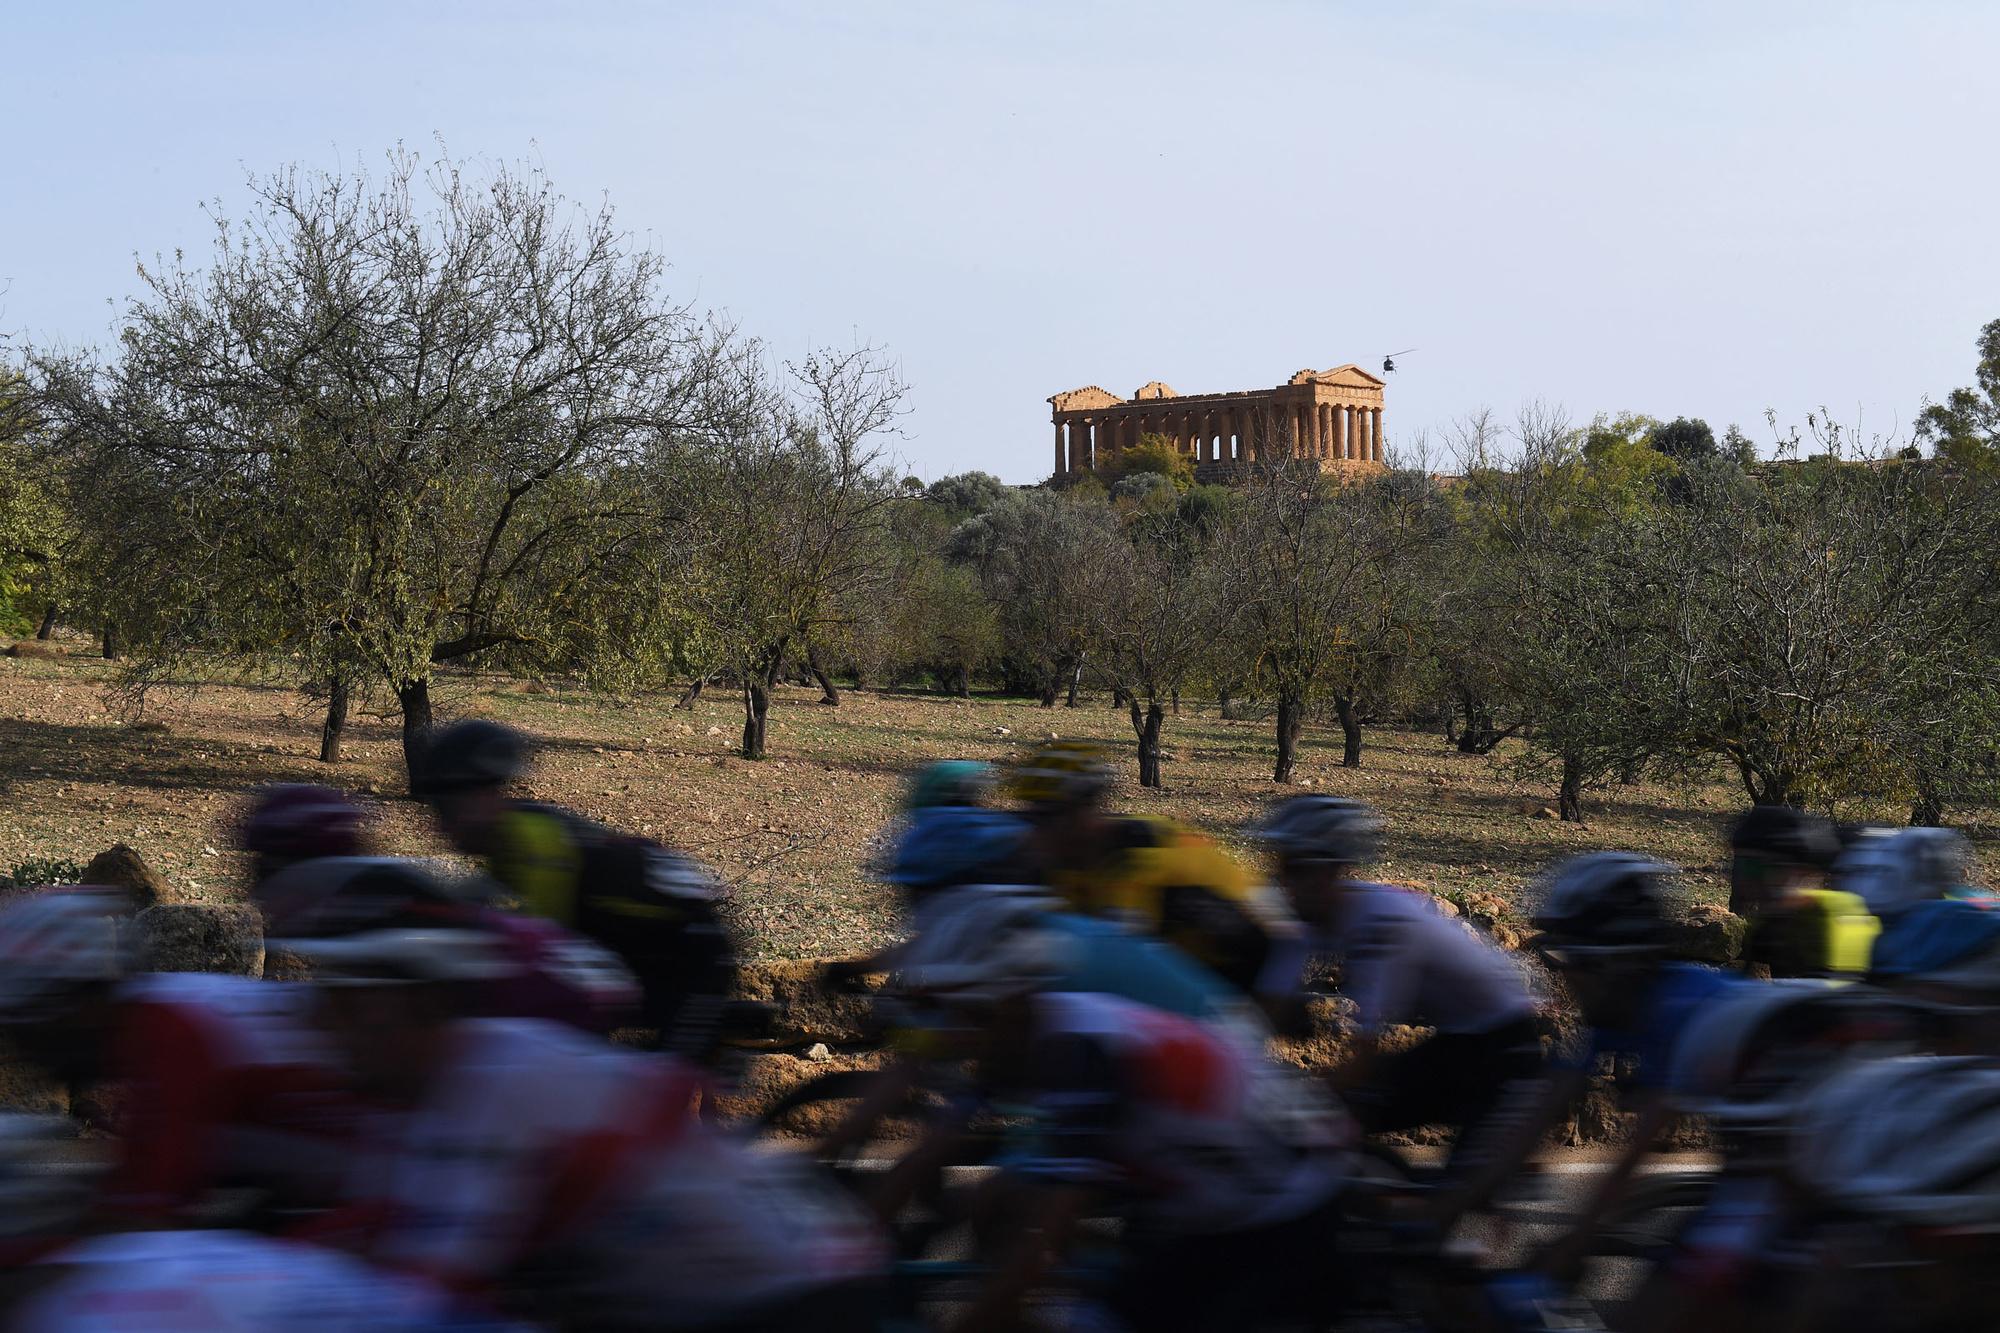 De renners reden voorbij de 'Valle dei Templi', de vallei van de tempels.